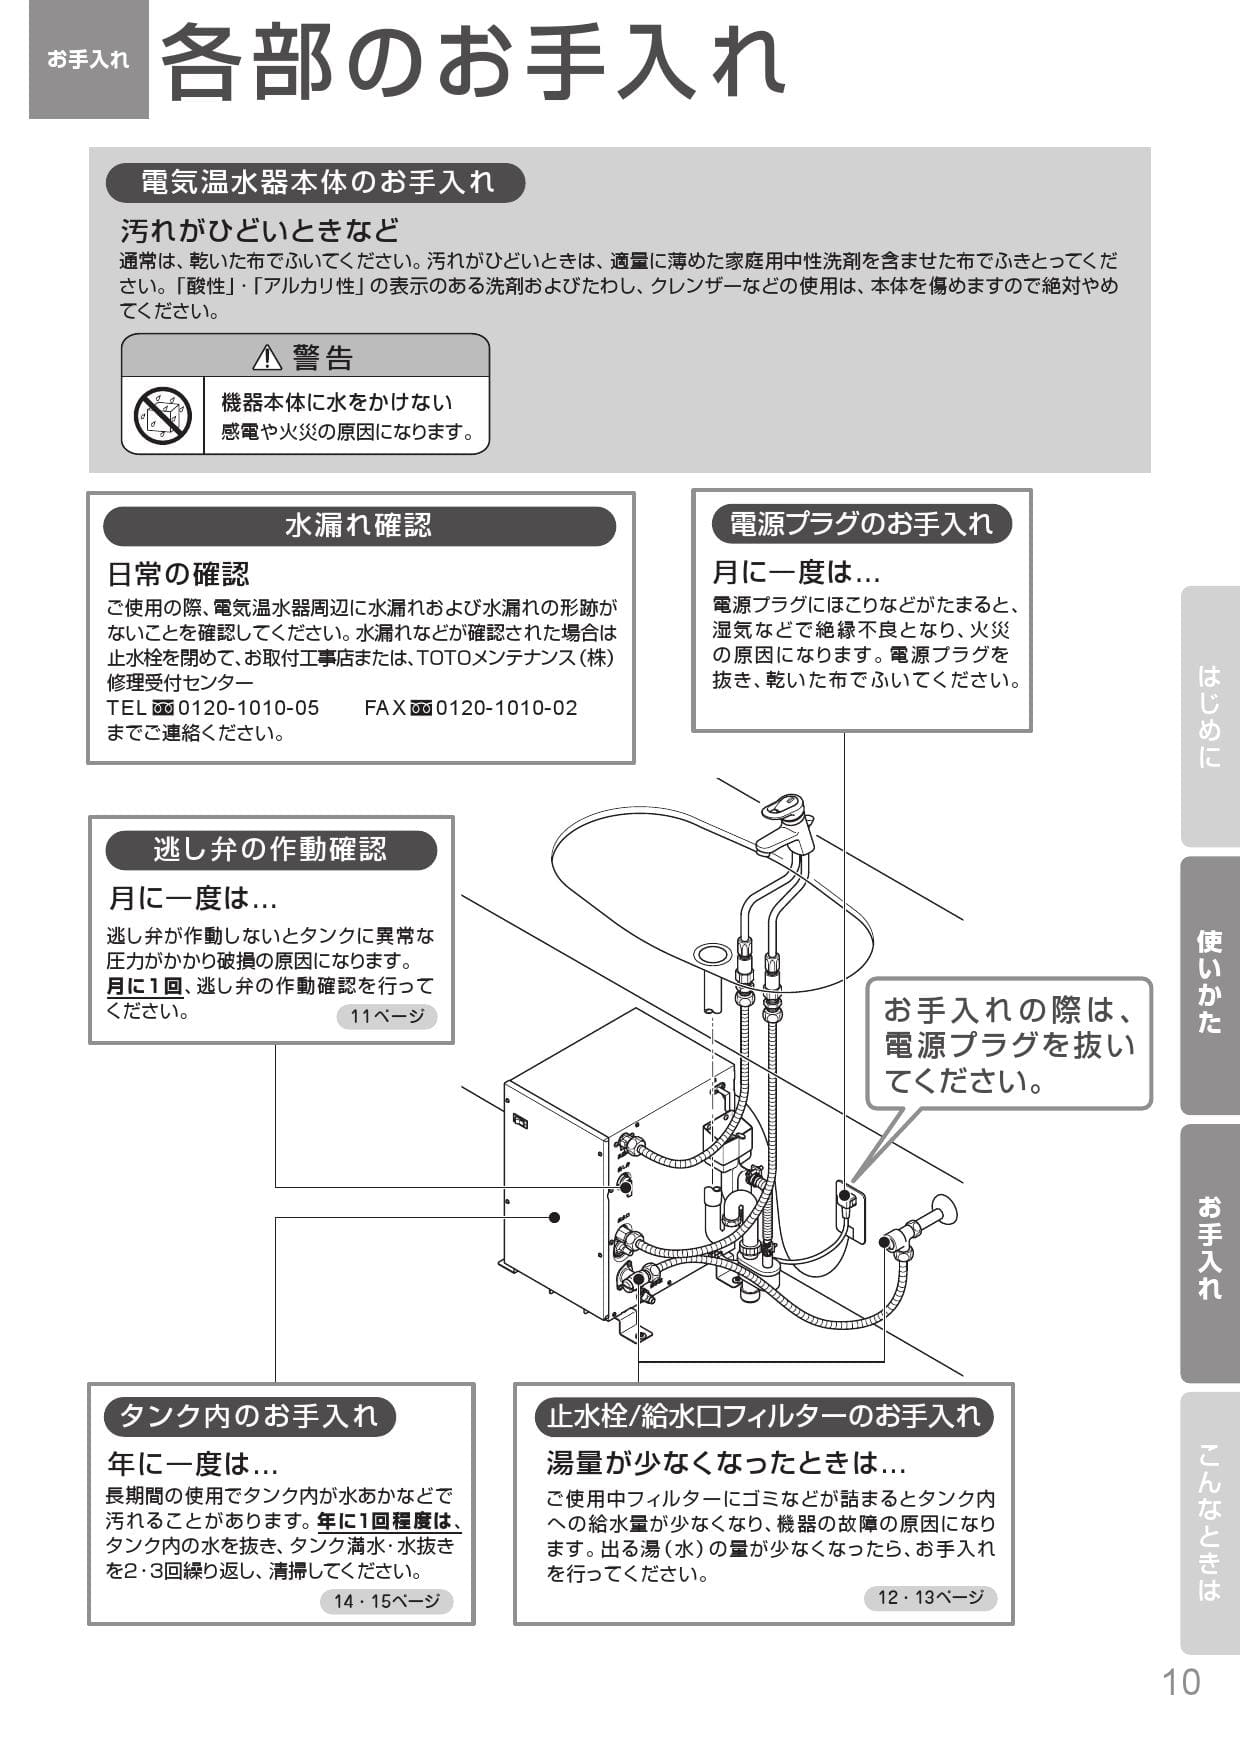 嵐の 延ばす 条約 電気 温水 器 小型 toto - npo-gunma.jp